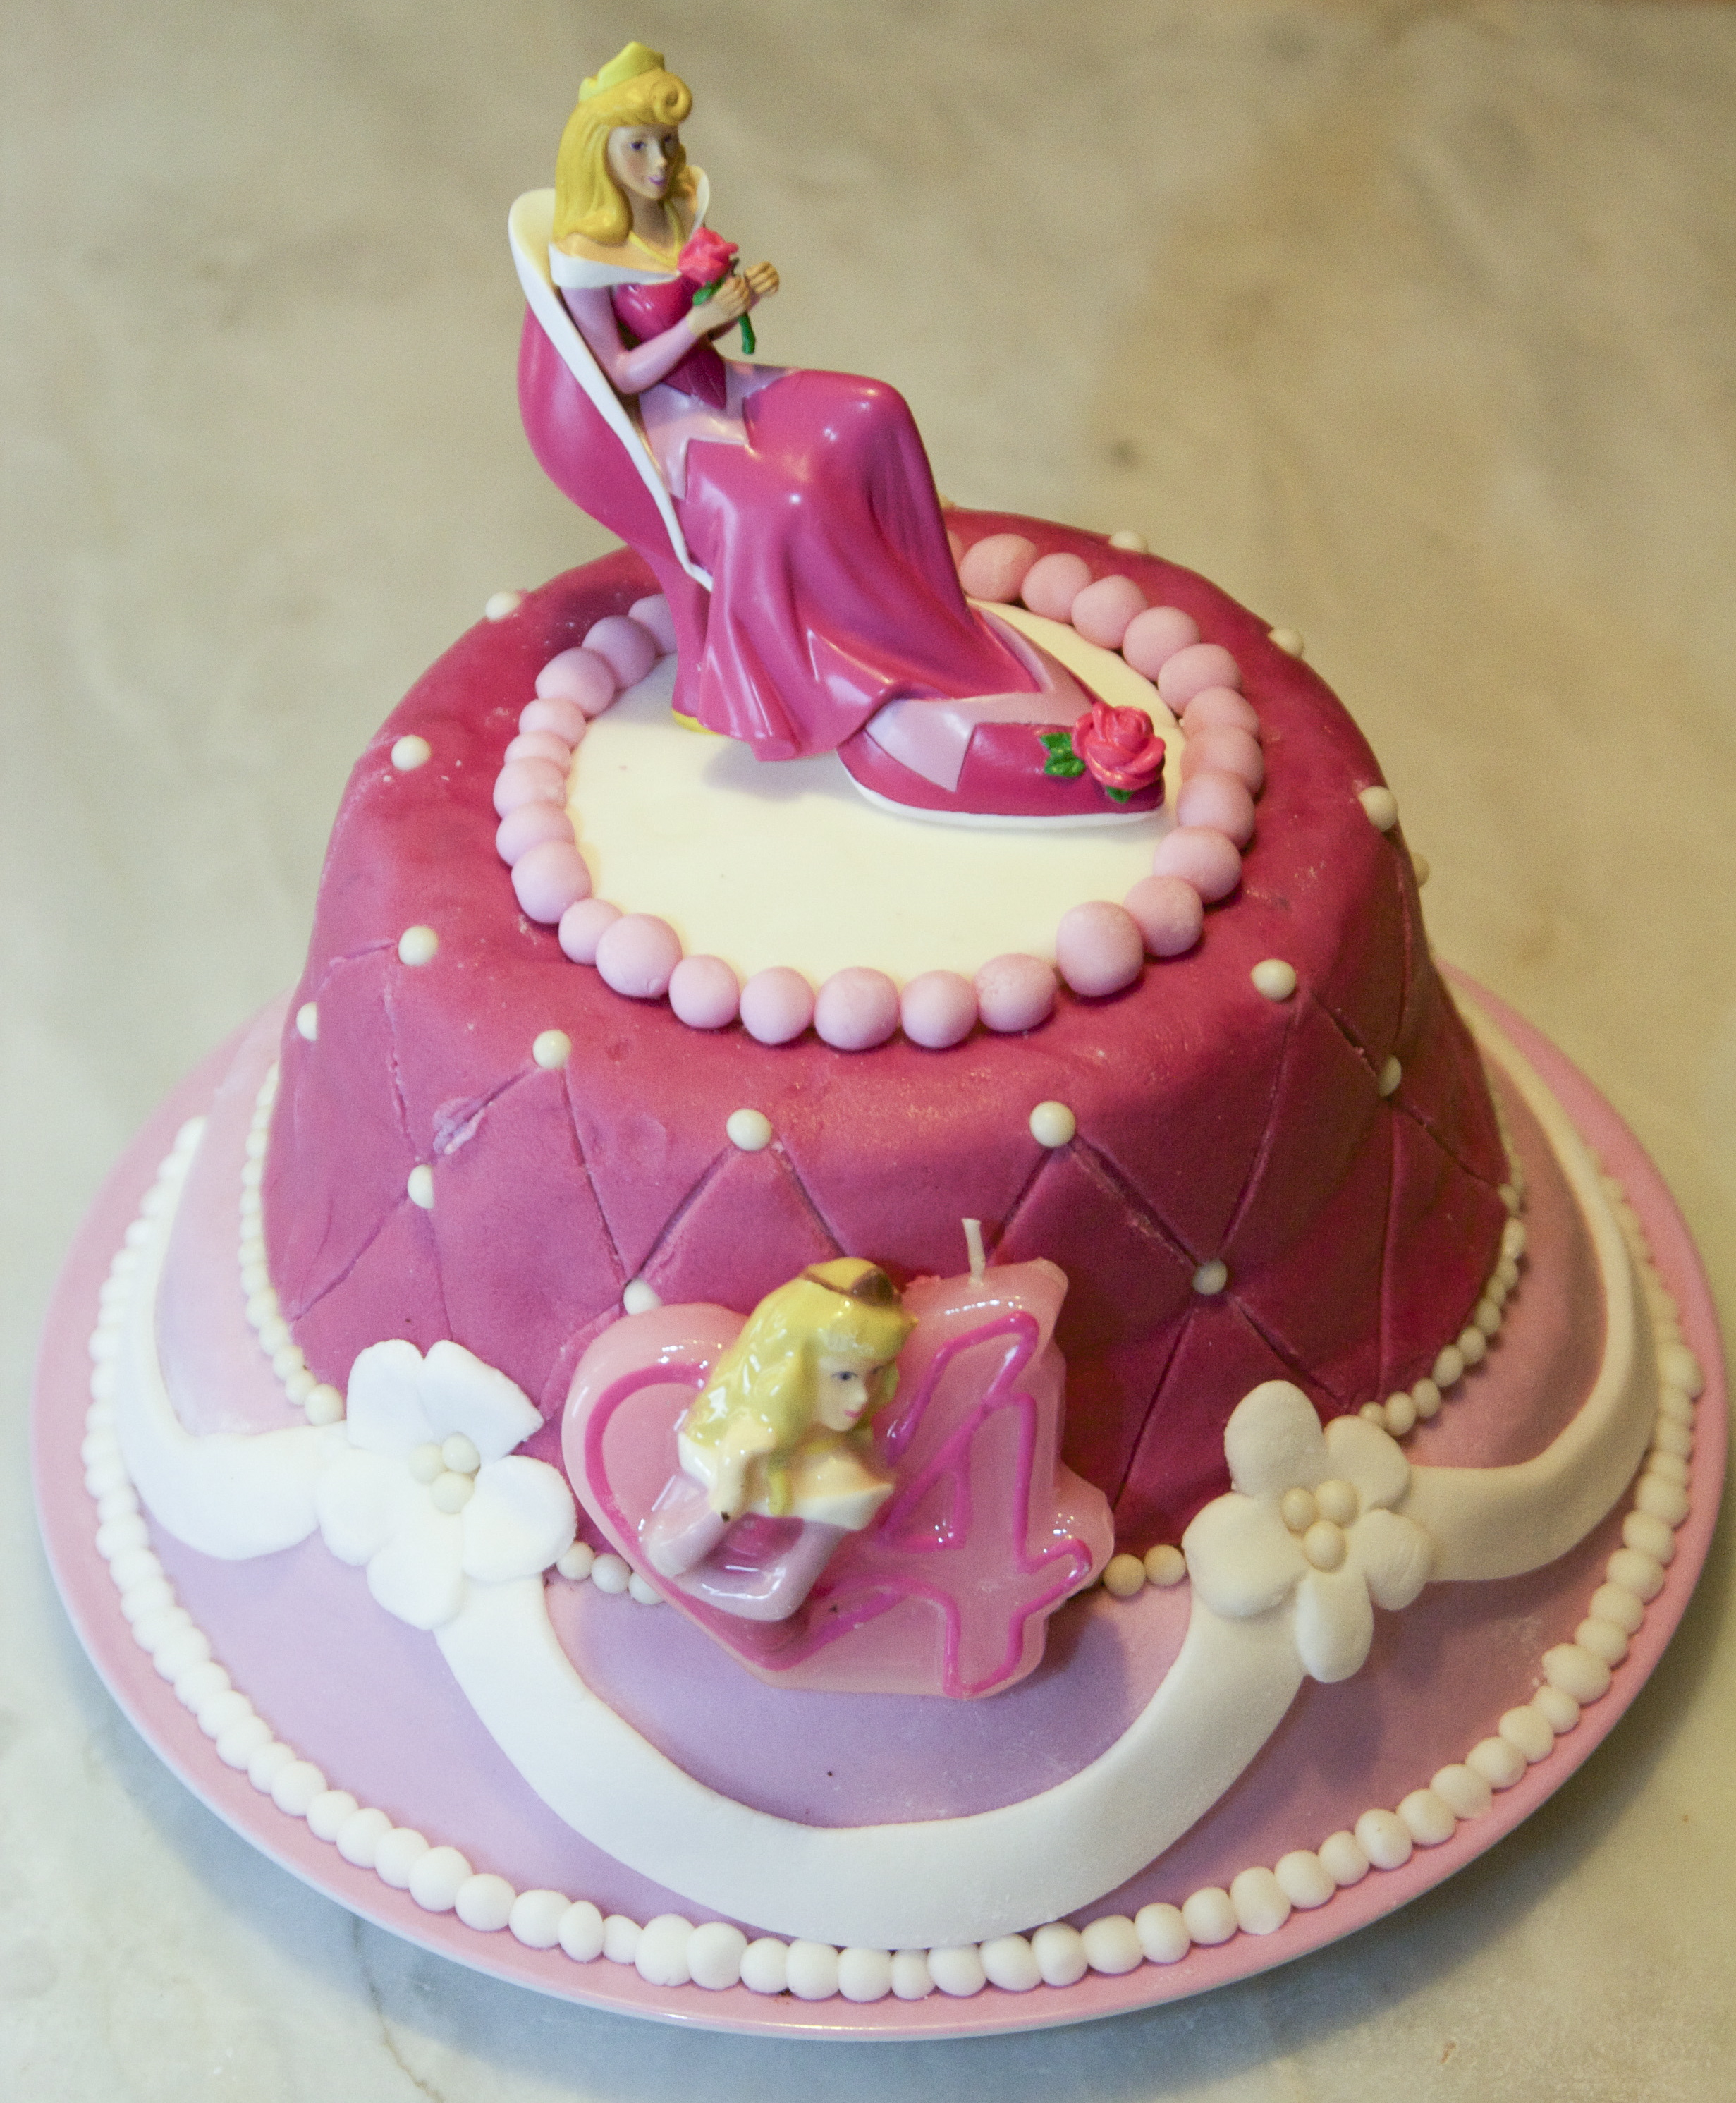 Recettes de gâteau anniversaire pour un enfant Les 750g - gateau anniversaire petite fille